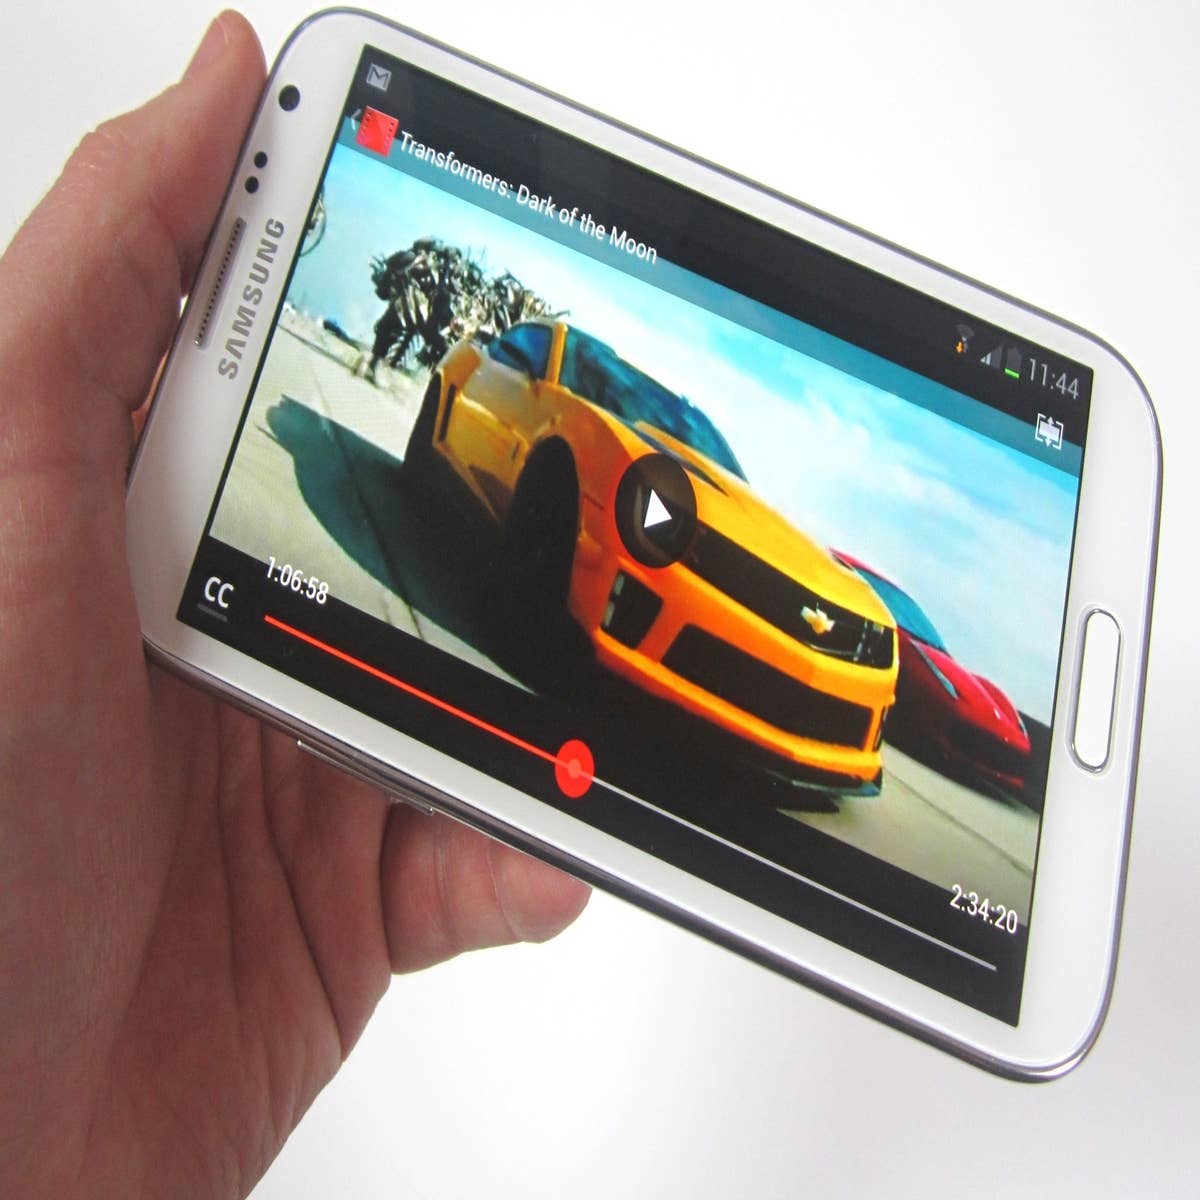 La nueva tablet Galaxy, más grande y potente - Mundo Digital - ABC